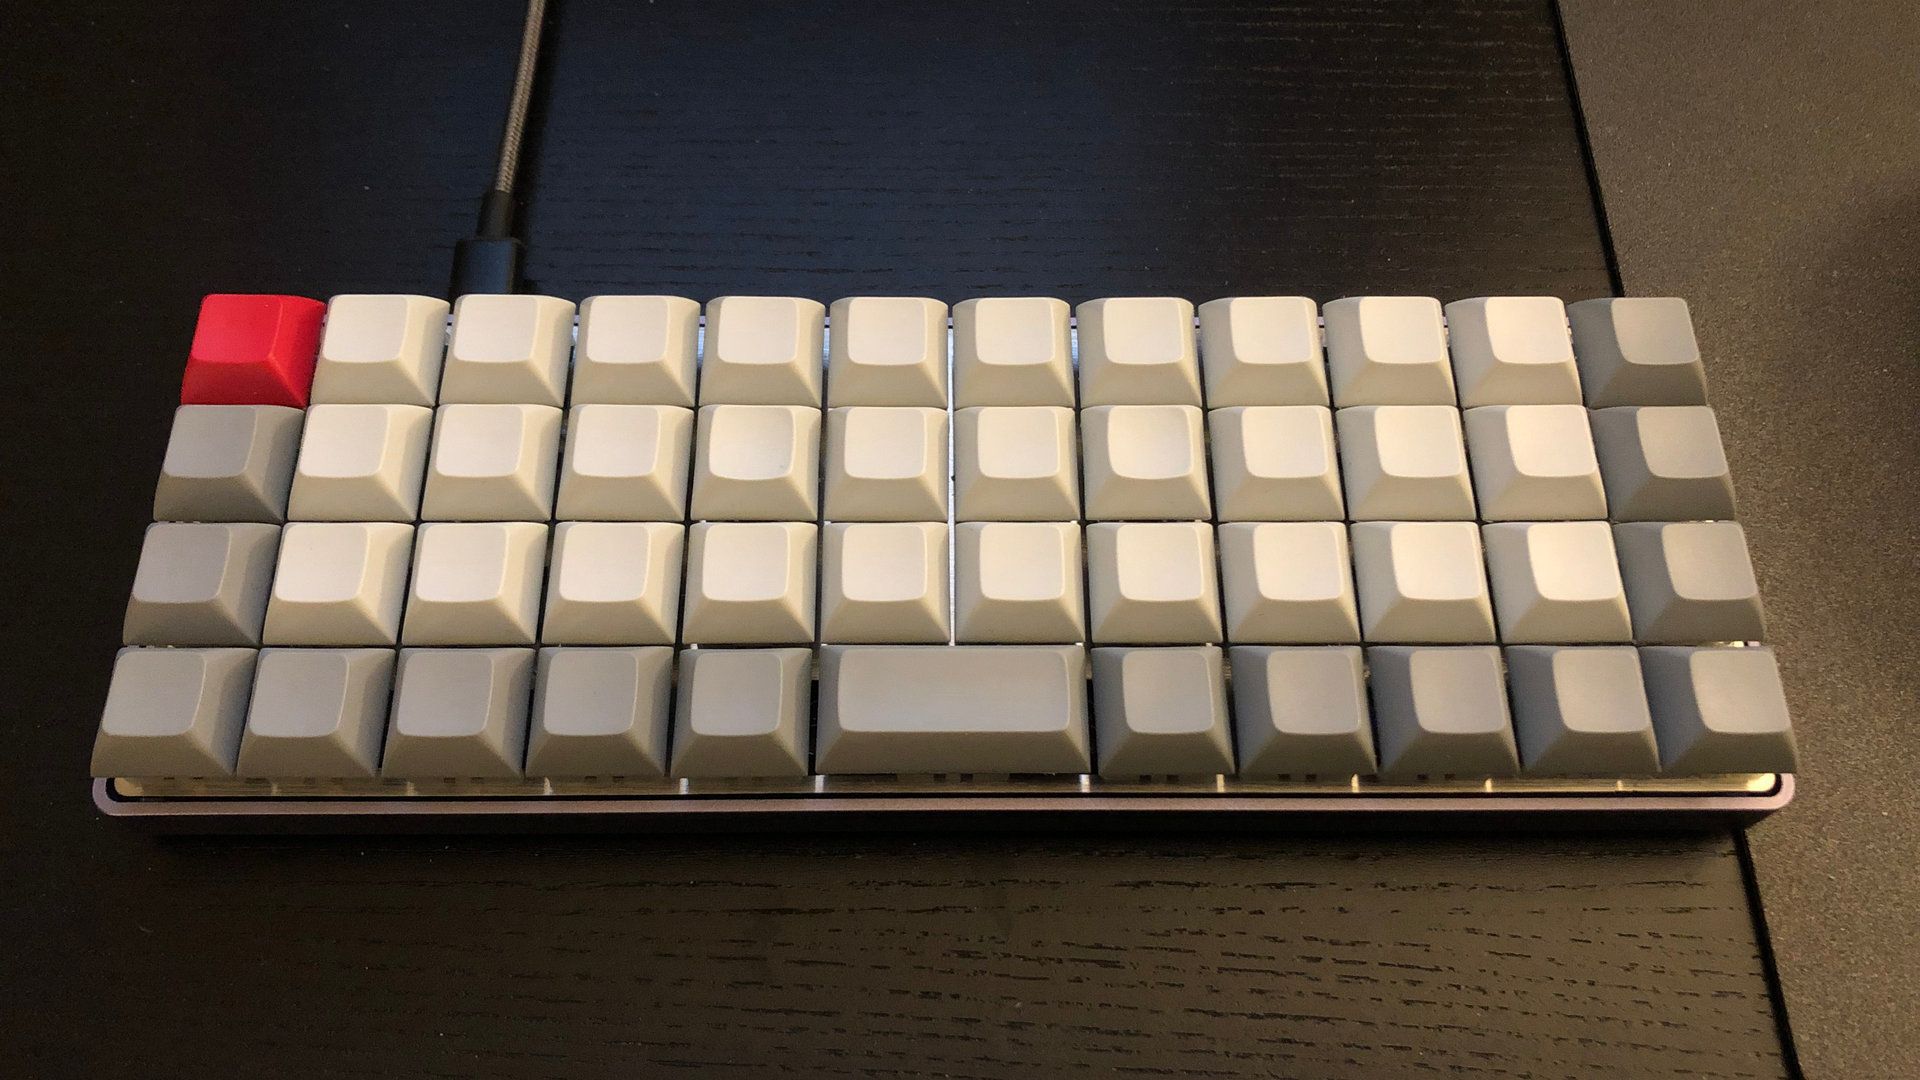 the keyboard itself